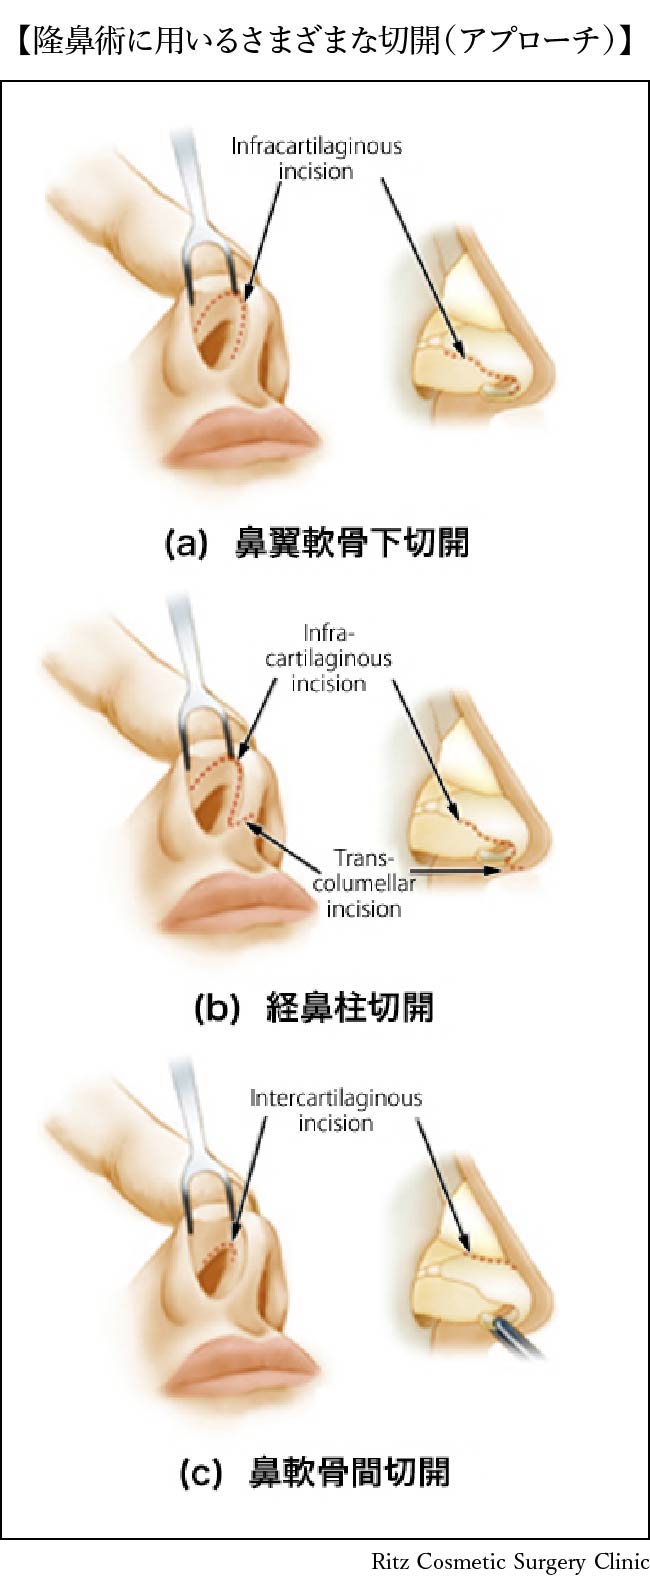 隆鼻術に用いる様々な切開（アプローチ）(a)鼻翼軟骨下切開(b)経鼻柱切開(c)鼻軟骨間切開